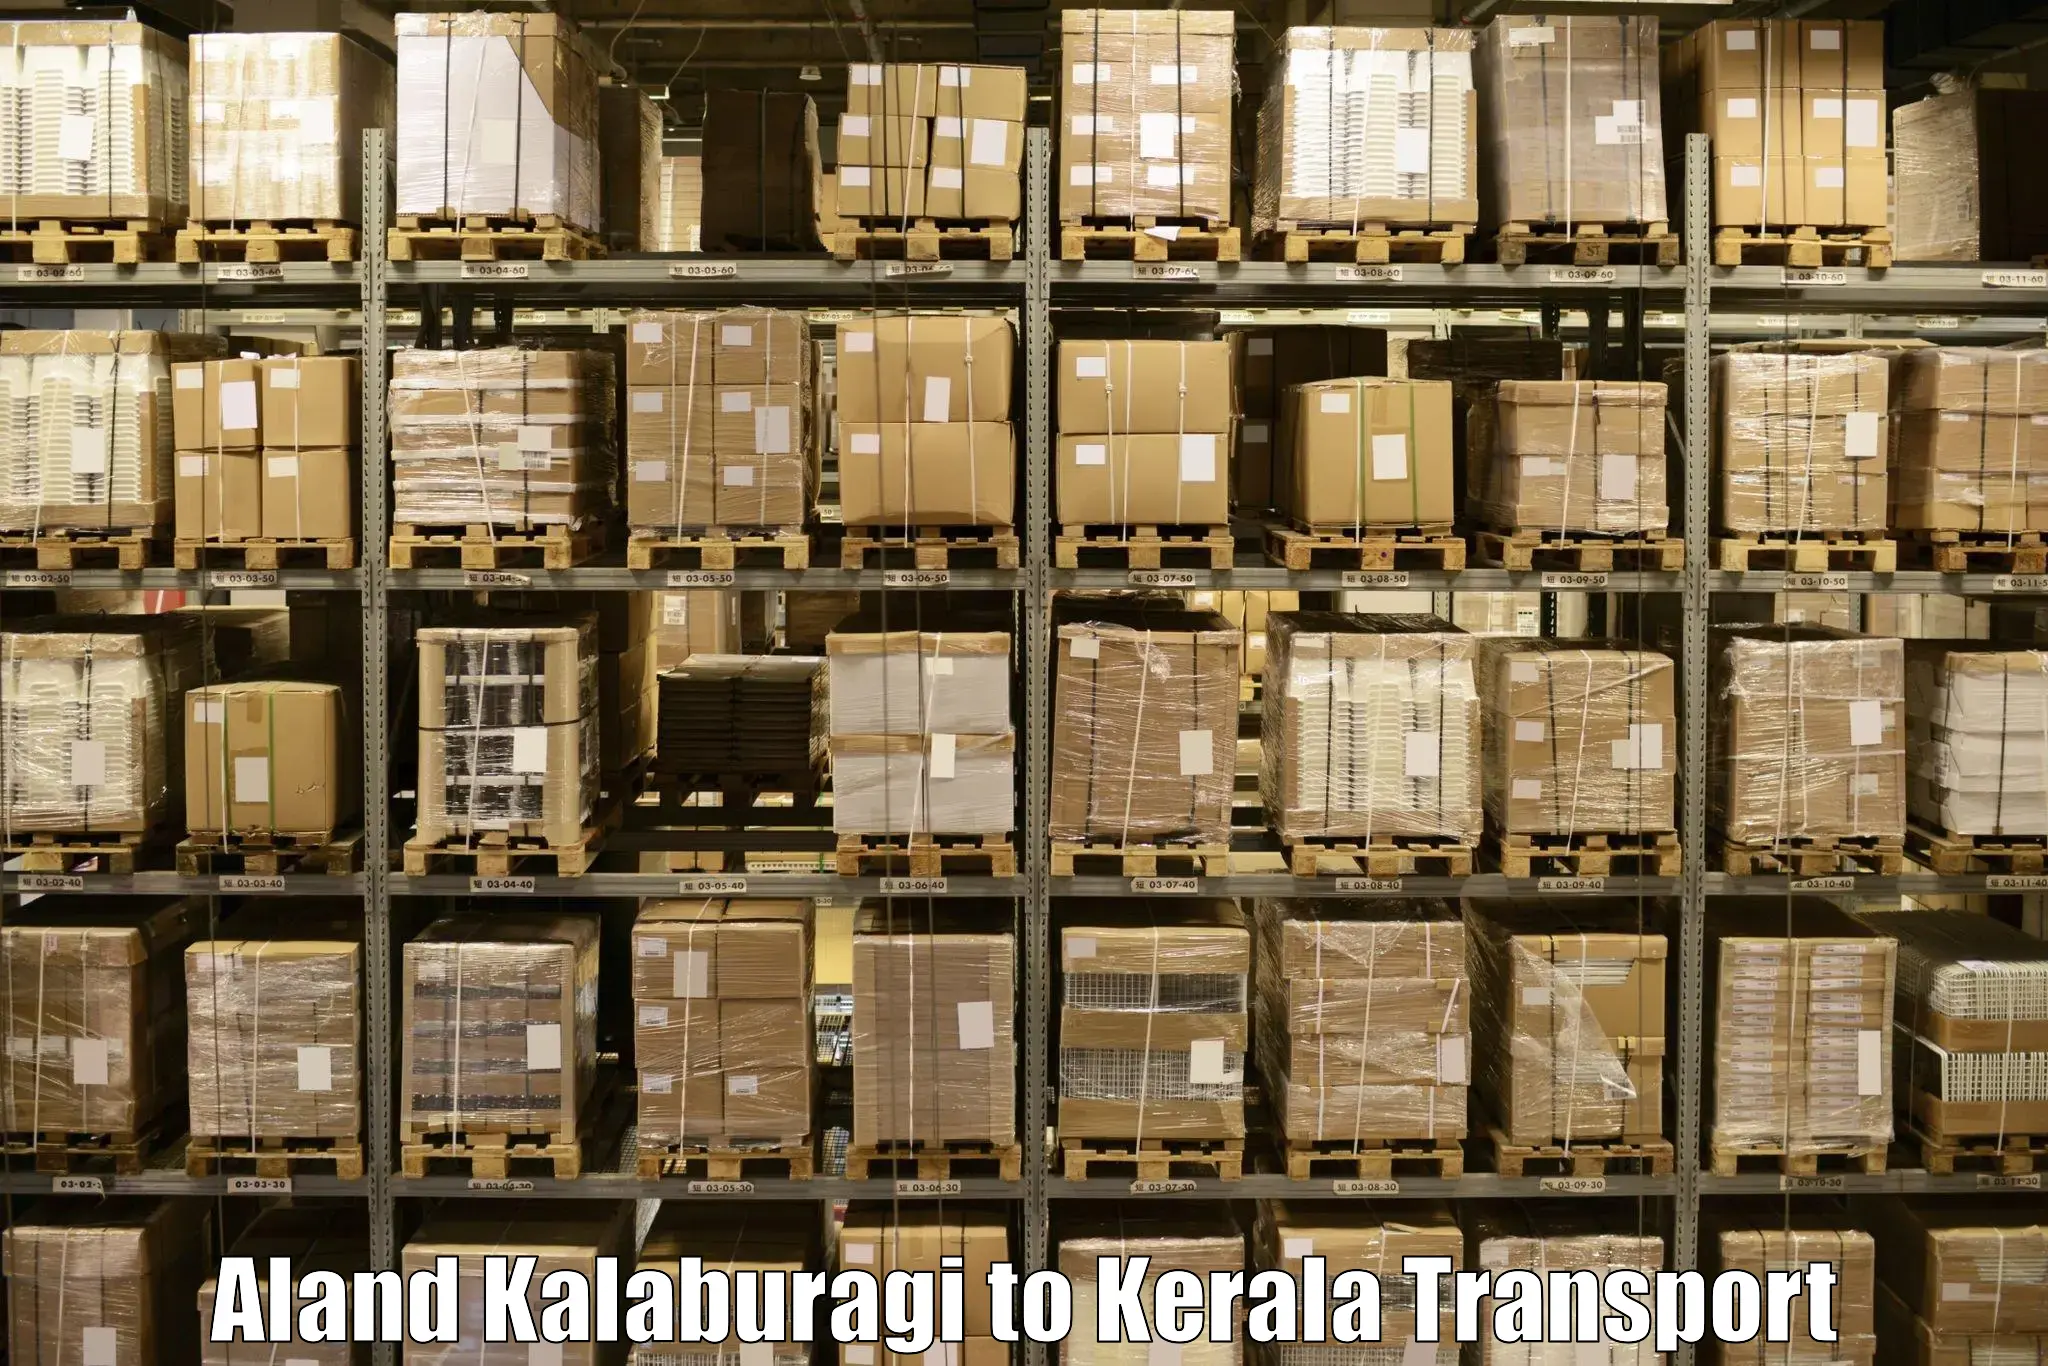 Interstate transport services Aland Kalaburagi to Kerala